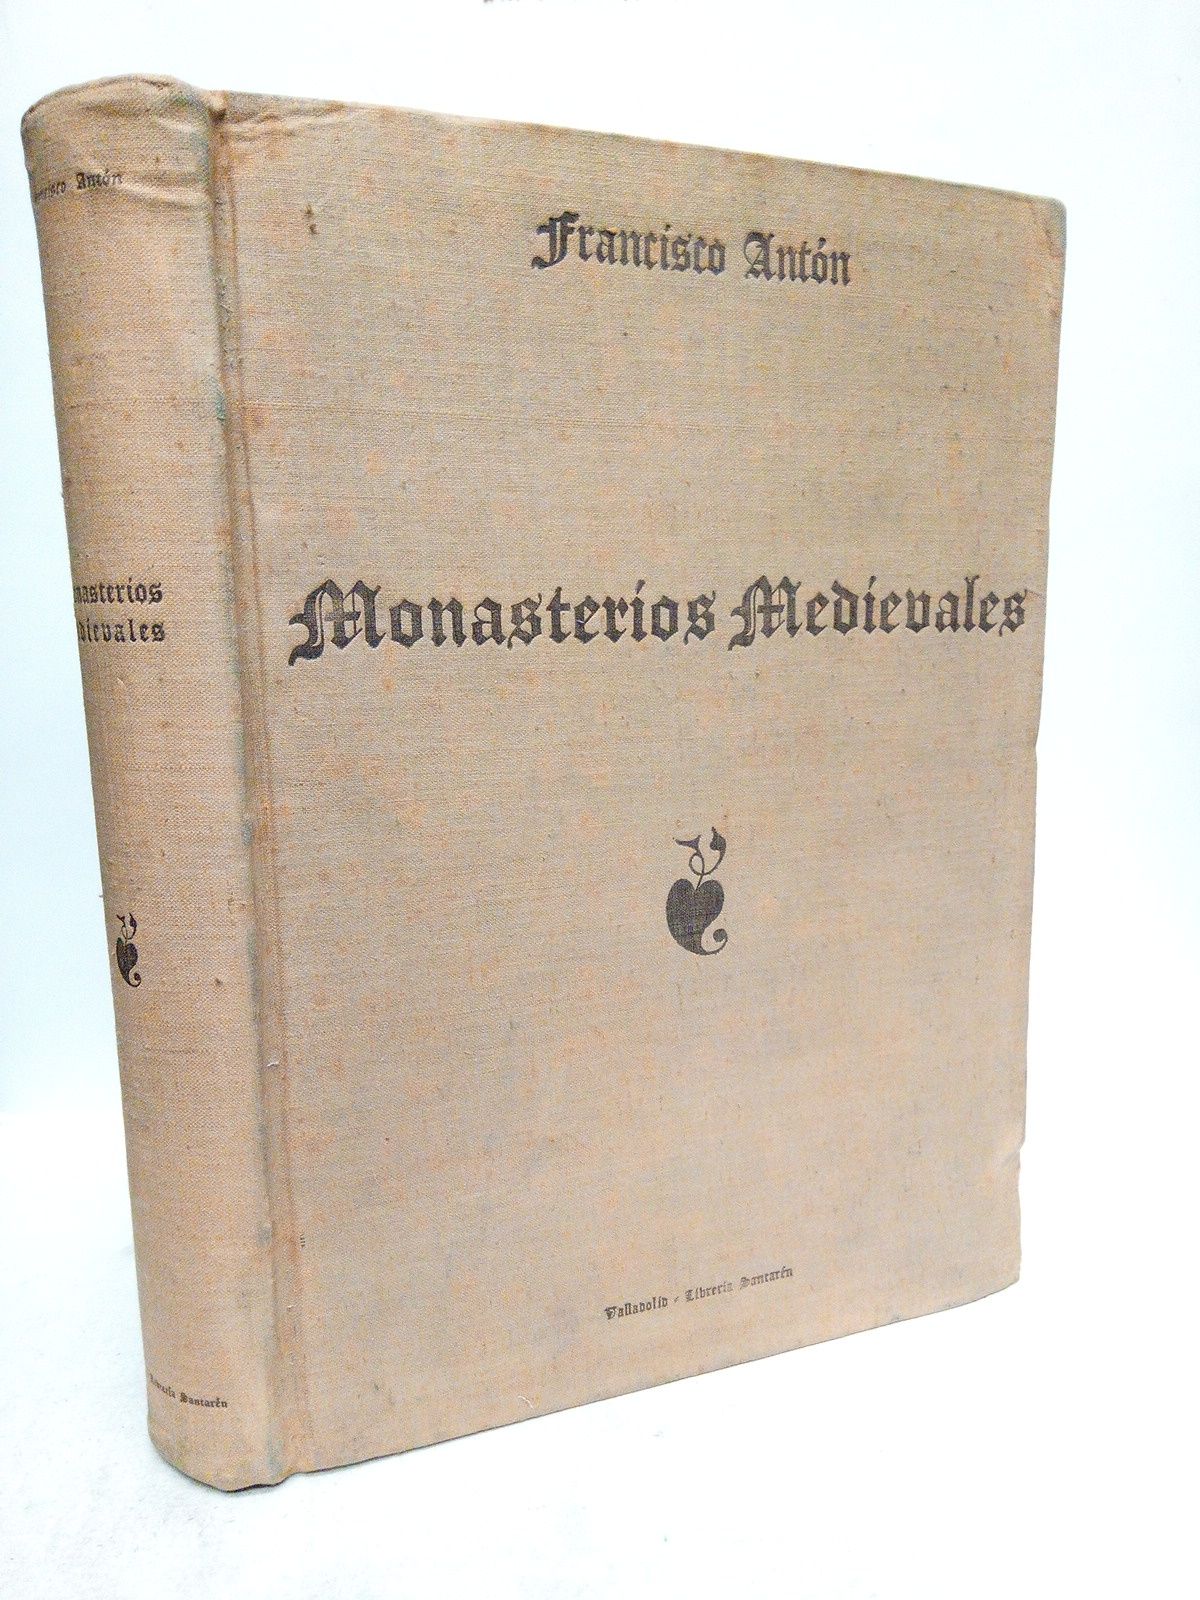 ANTON, Francisco - Monasterios Medievales de la Provincia de Valladolid